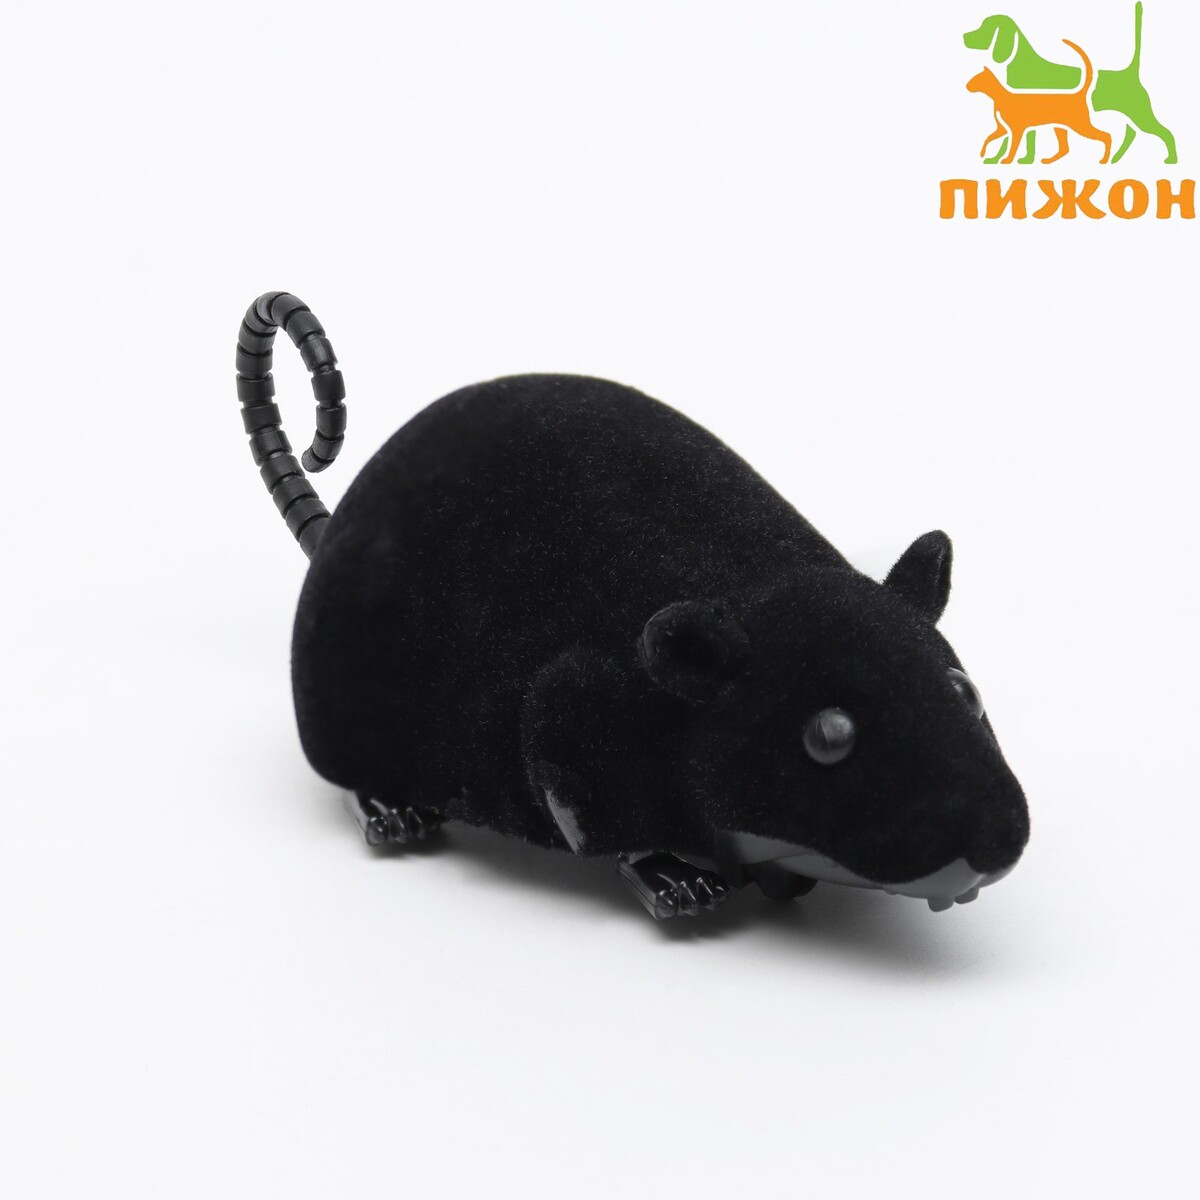 Мышь заводная бархатная, 12 см, черная мышь заводная меховая 12 см коричневая